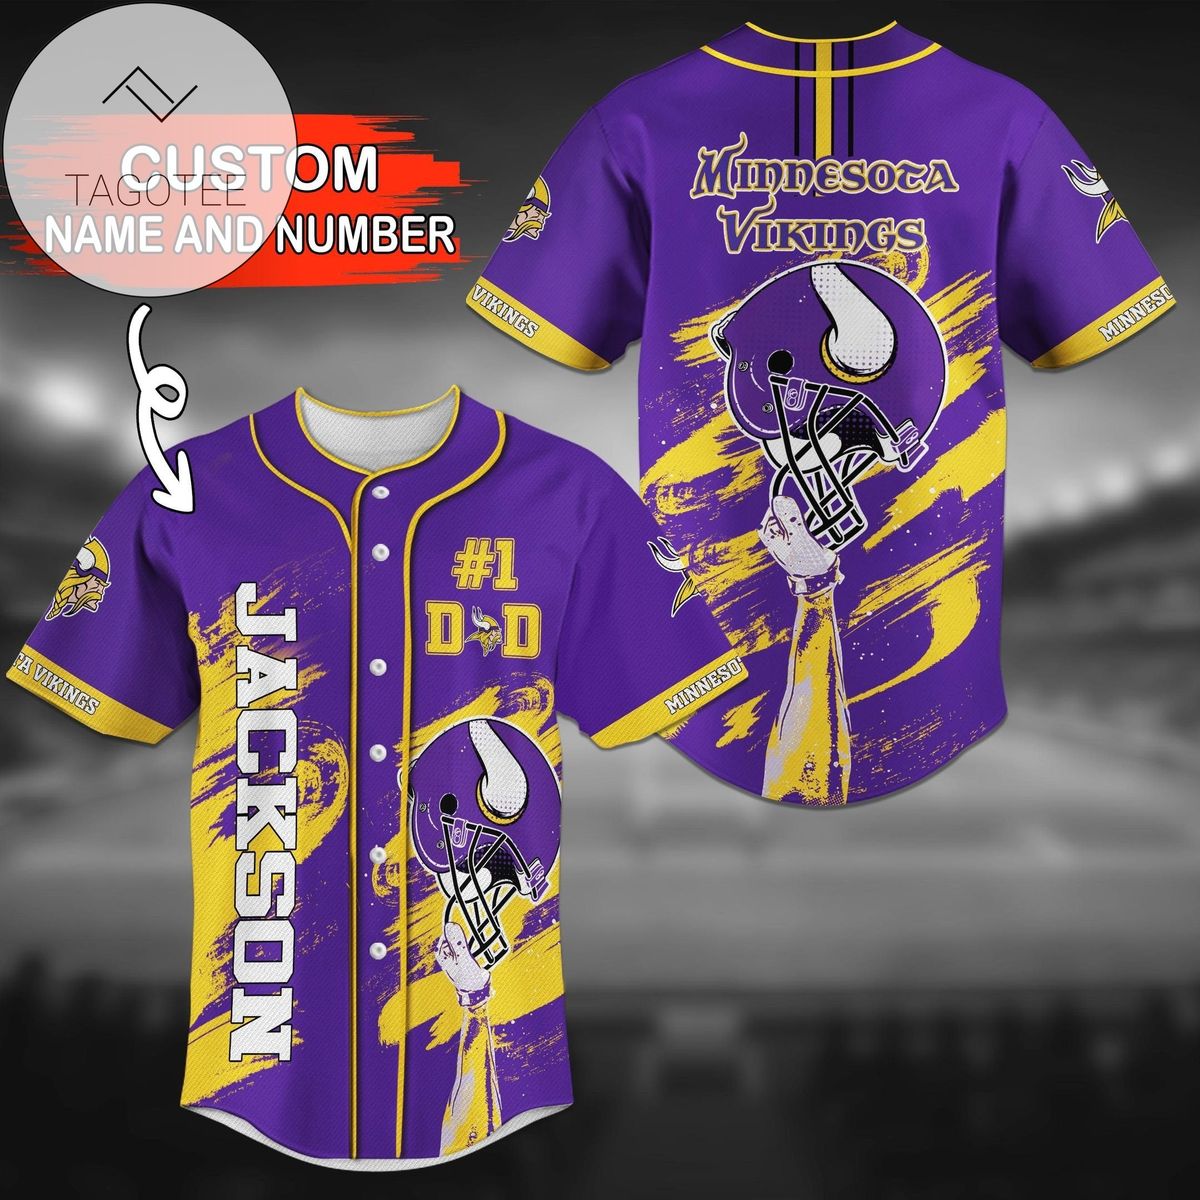 Minnesota Vikings Personalized Baseball Jersey Shirt No1 Dad - NFL